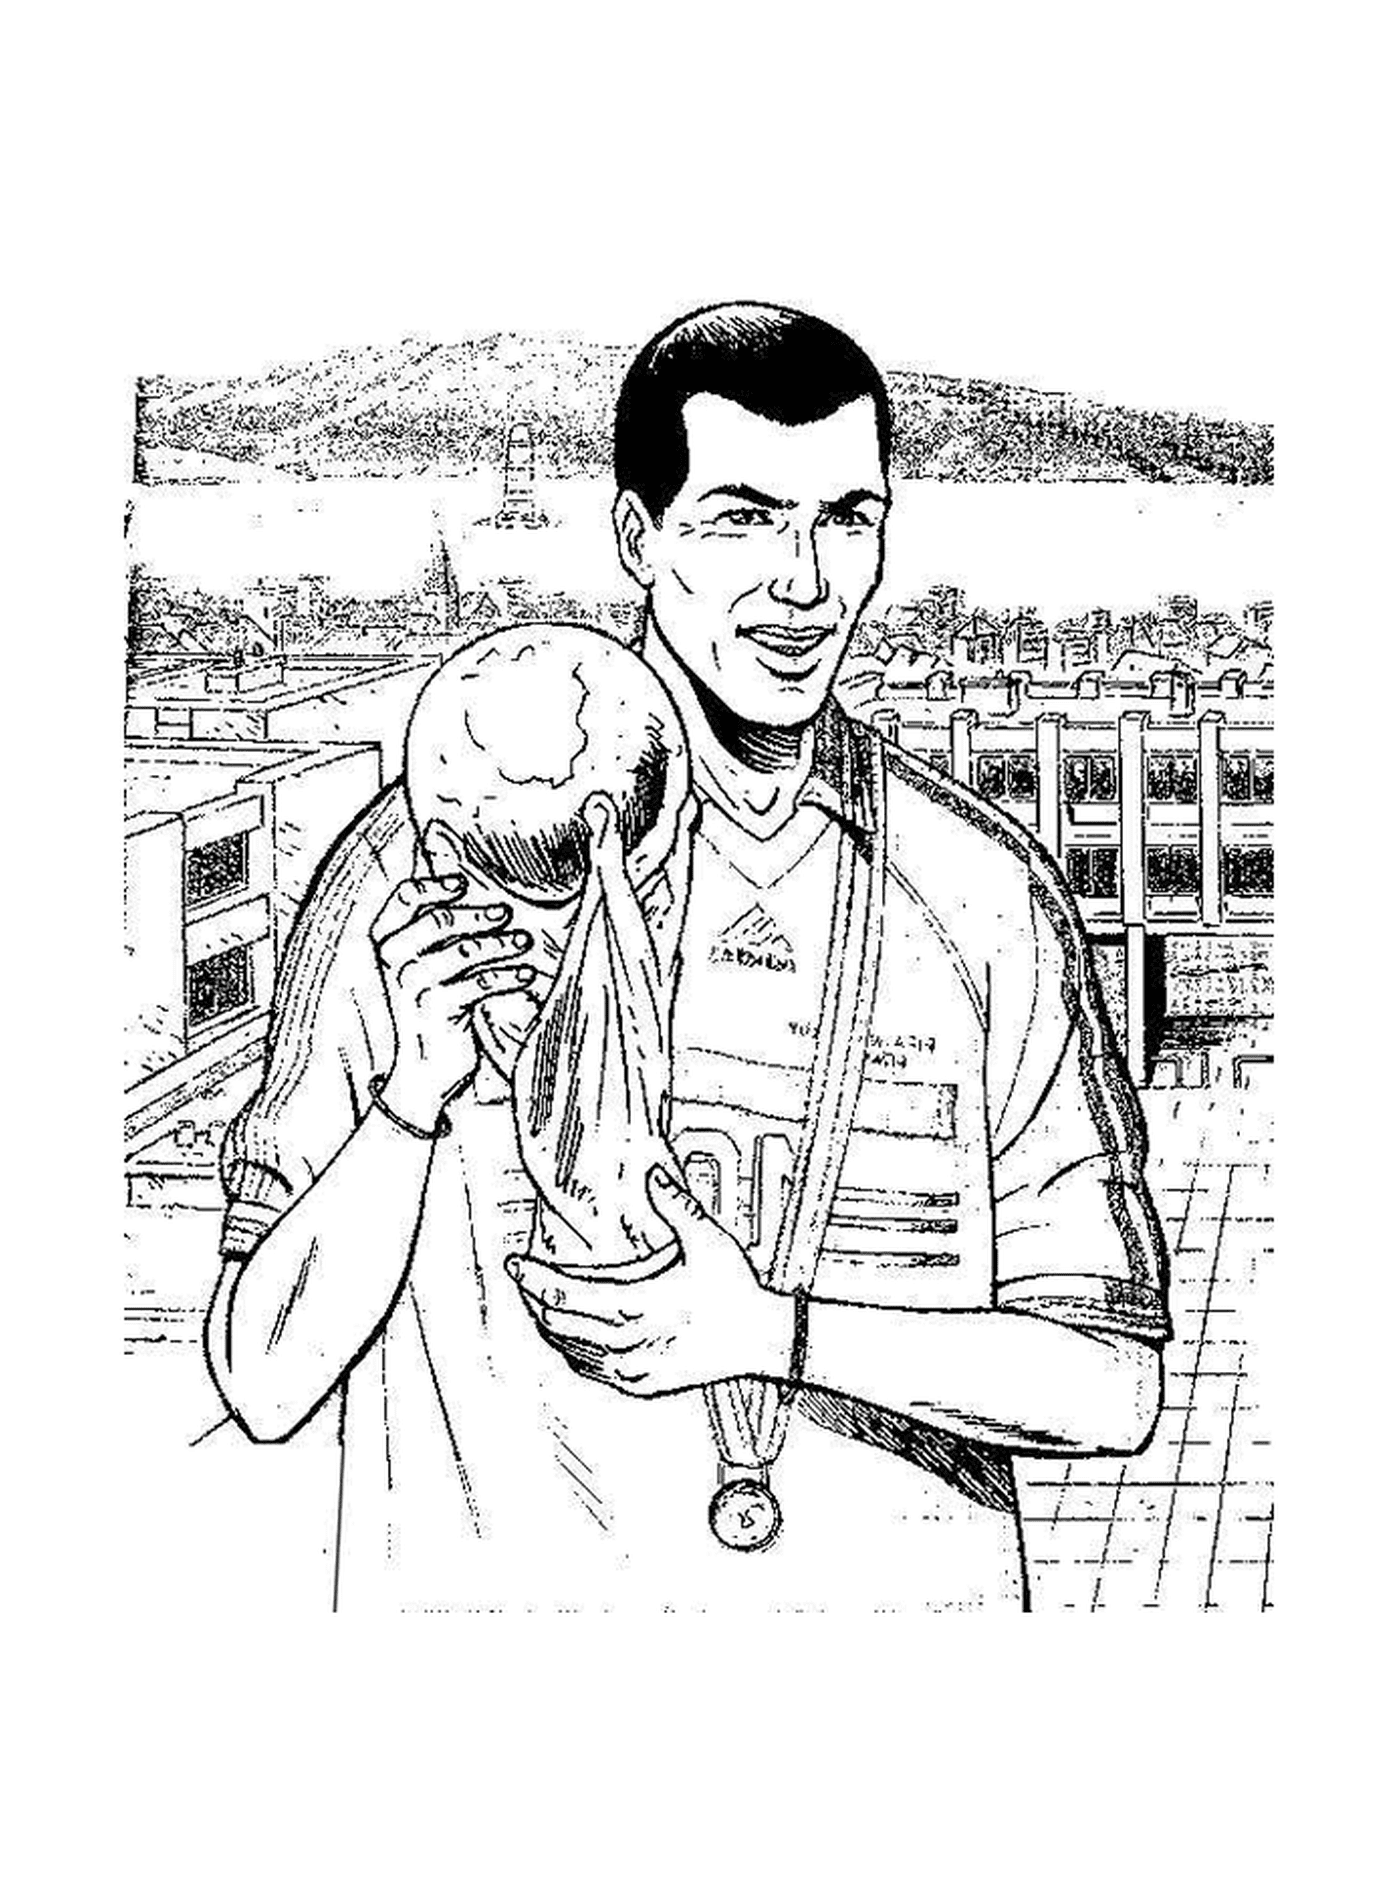  Zidane, the legendary footballer 